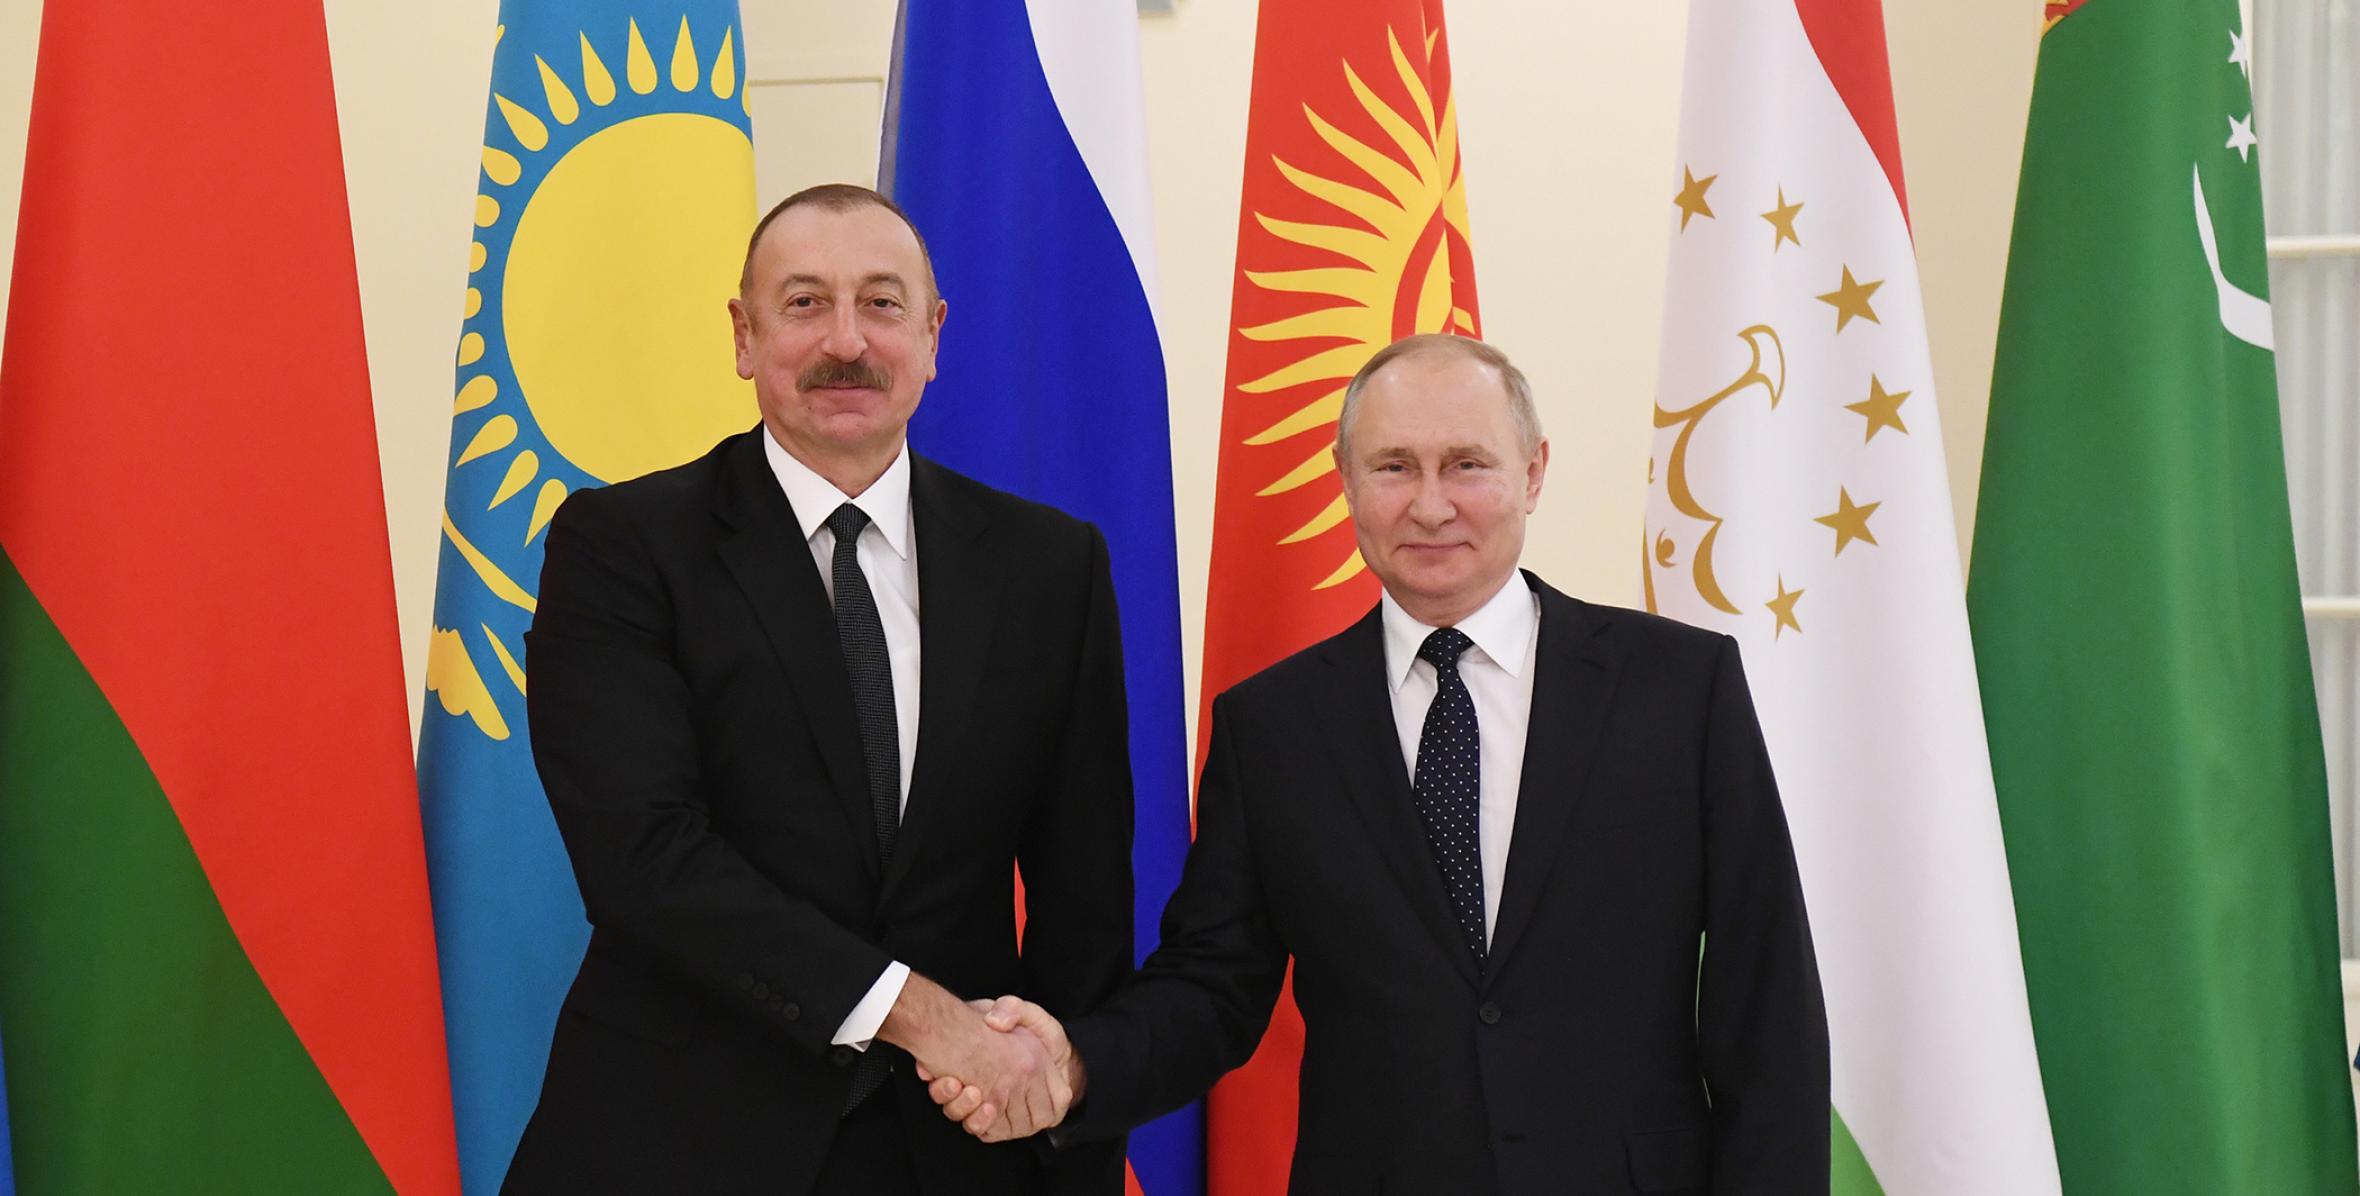 Informal meeting of CIS Heads of State was held in St. Petersburg